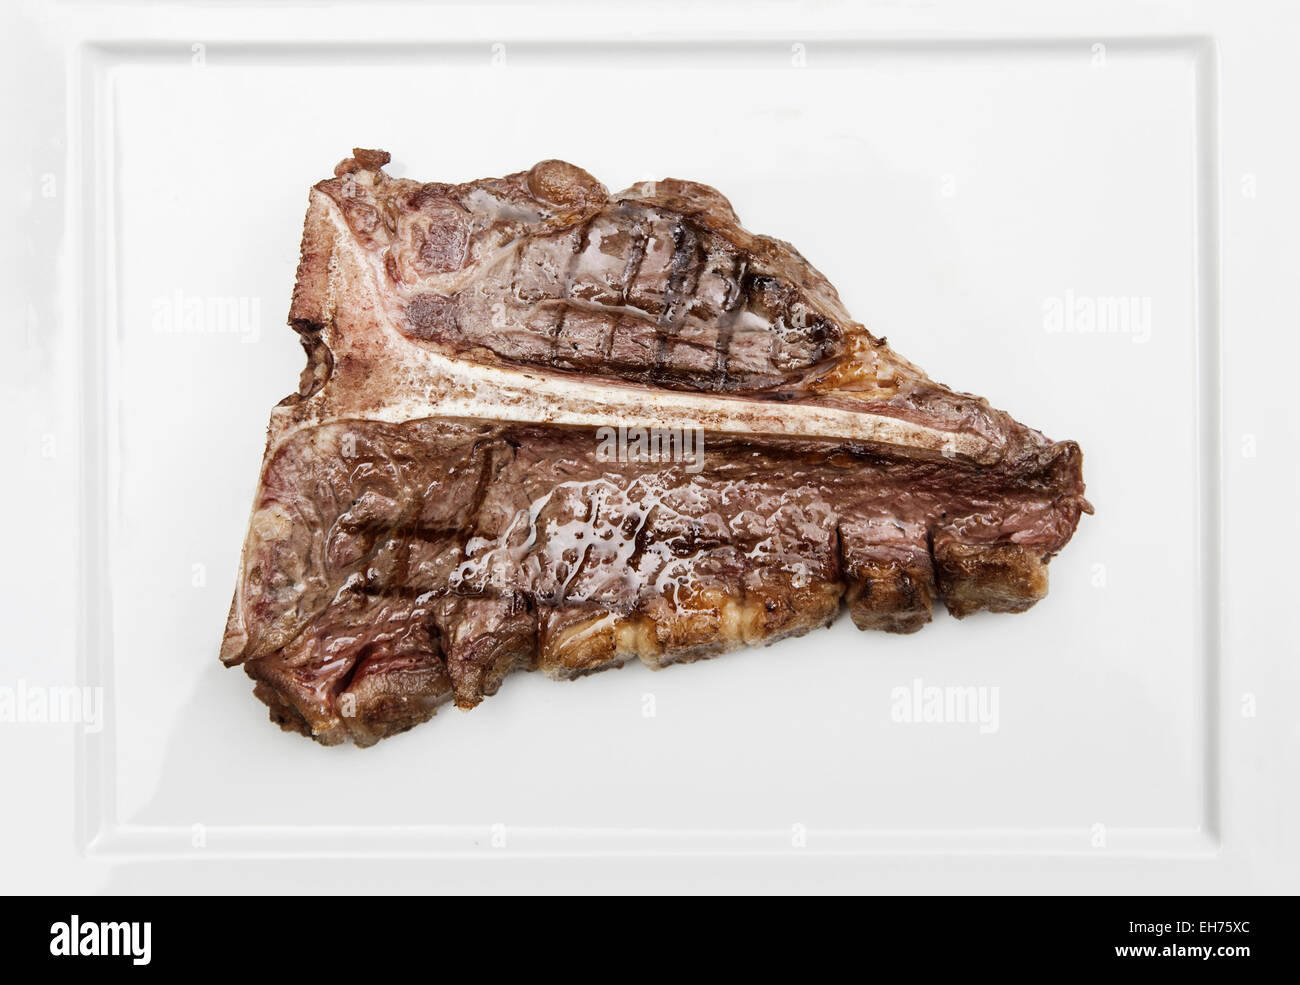 Délicieux et juteux T-bone steak sur une plaque Banque D'Images